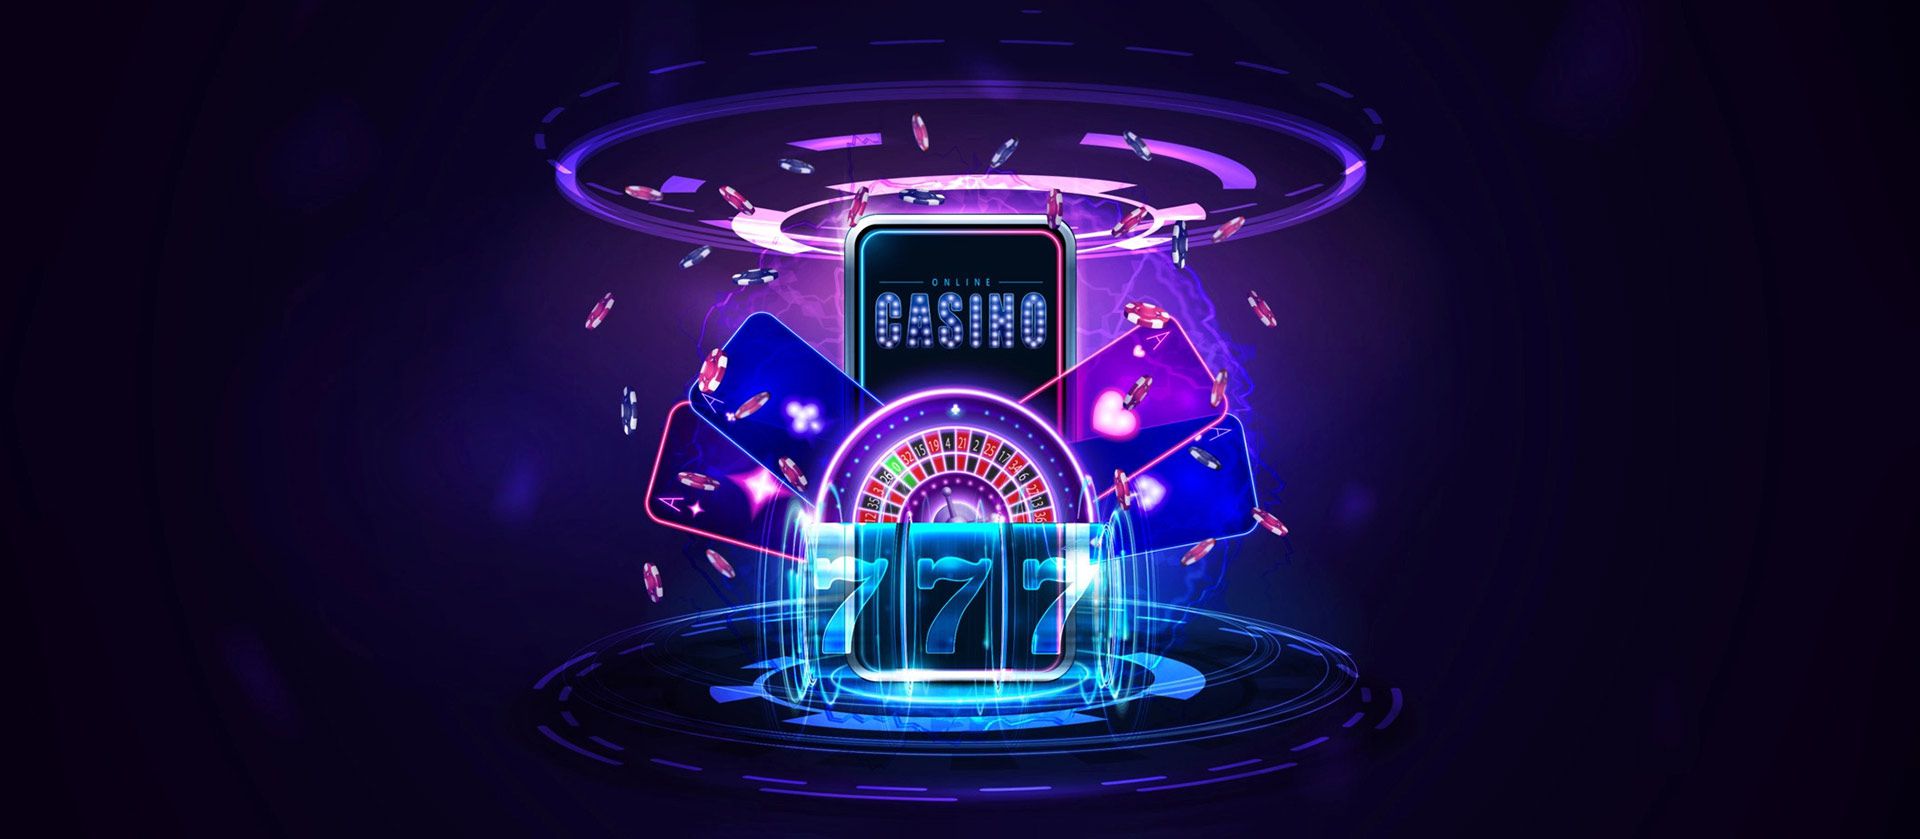 Beginner mobile casino games.